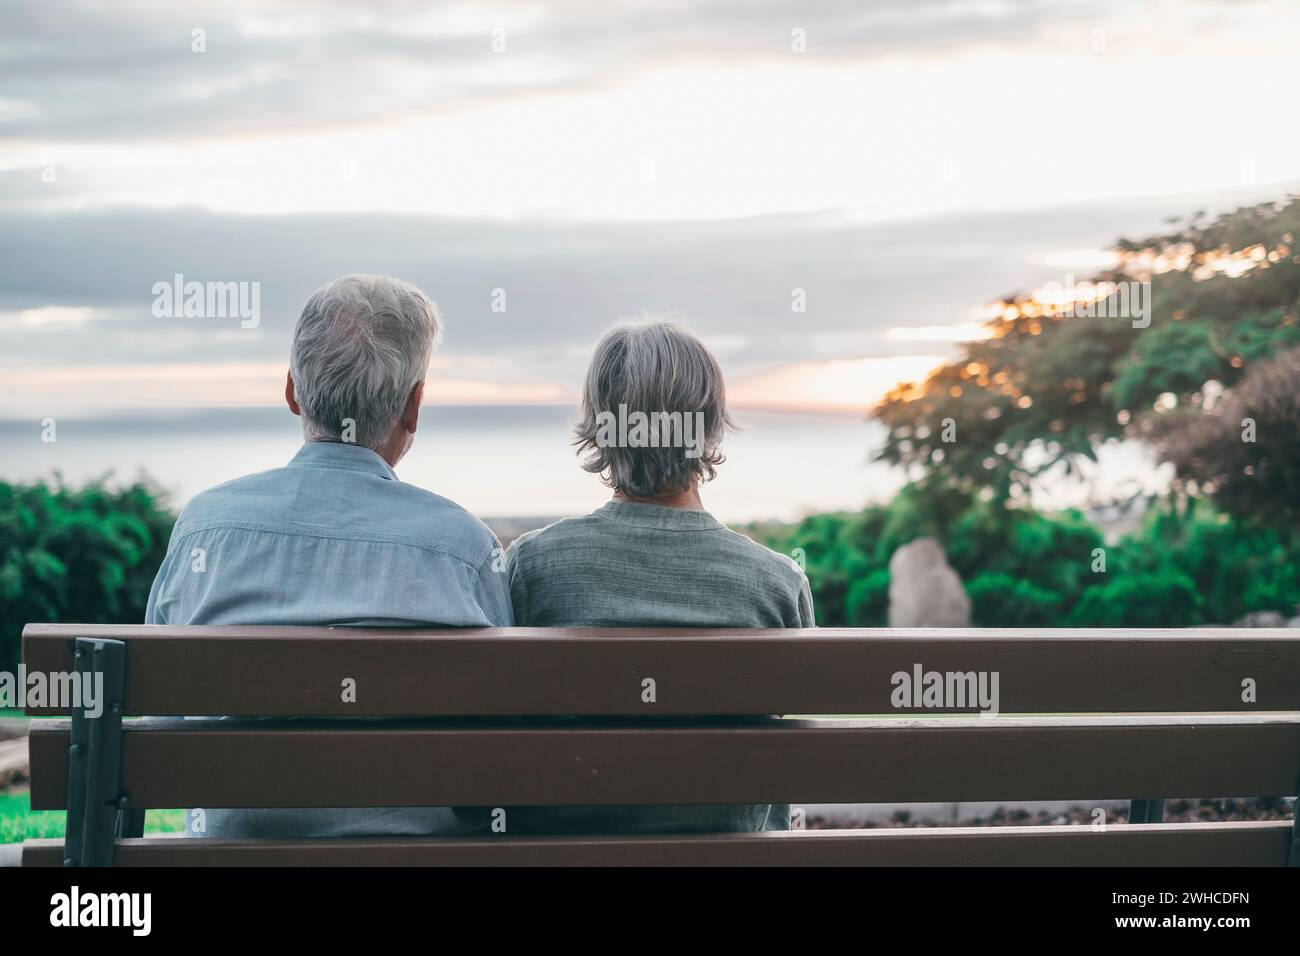 Kopfaufnahme Nahaufnahme Porträt glückliche grauhaarige Frau mittleren Alters mit älterem Ehemann, genießt es, auf einer Bank im Park zu sitzen. Ein liebevolles, altes Familienpaar, das den Sonnenuntergang umschließt. Stockfoto